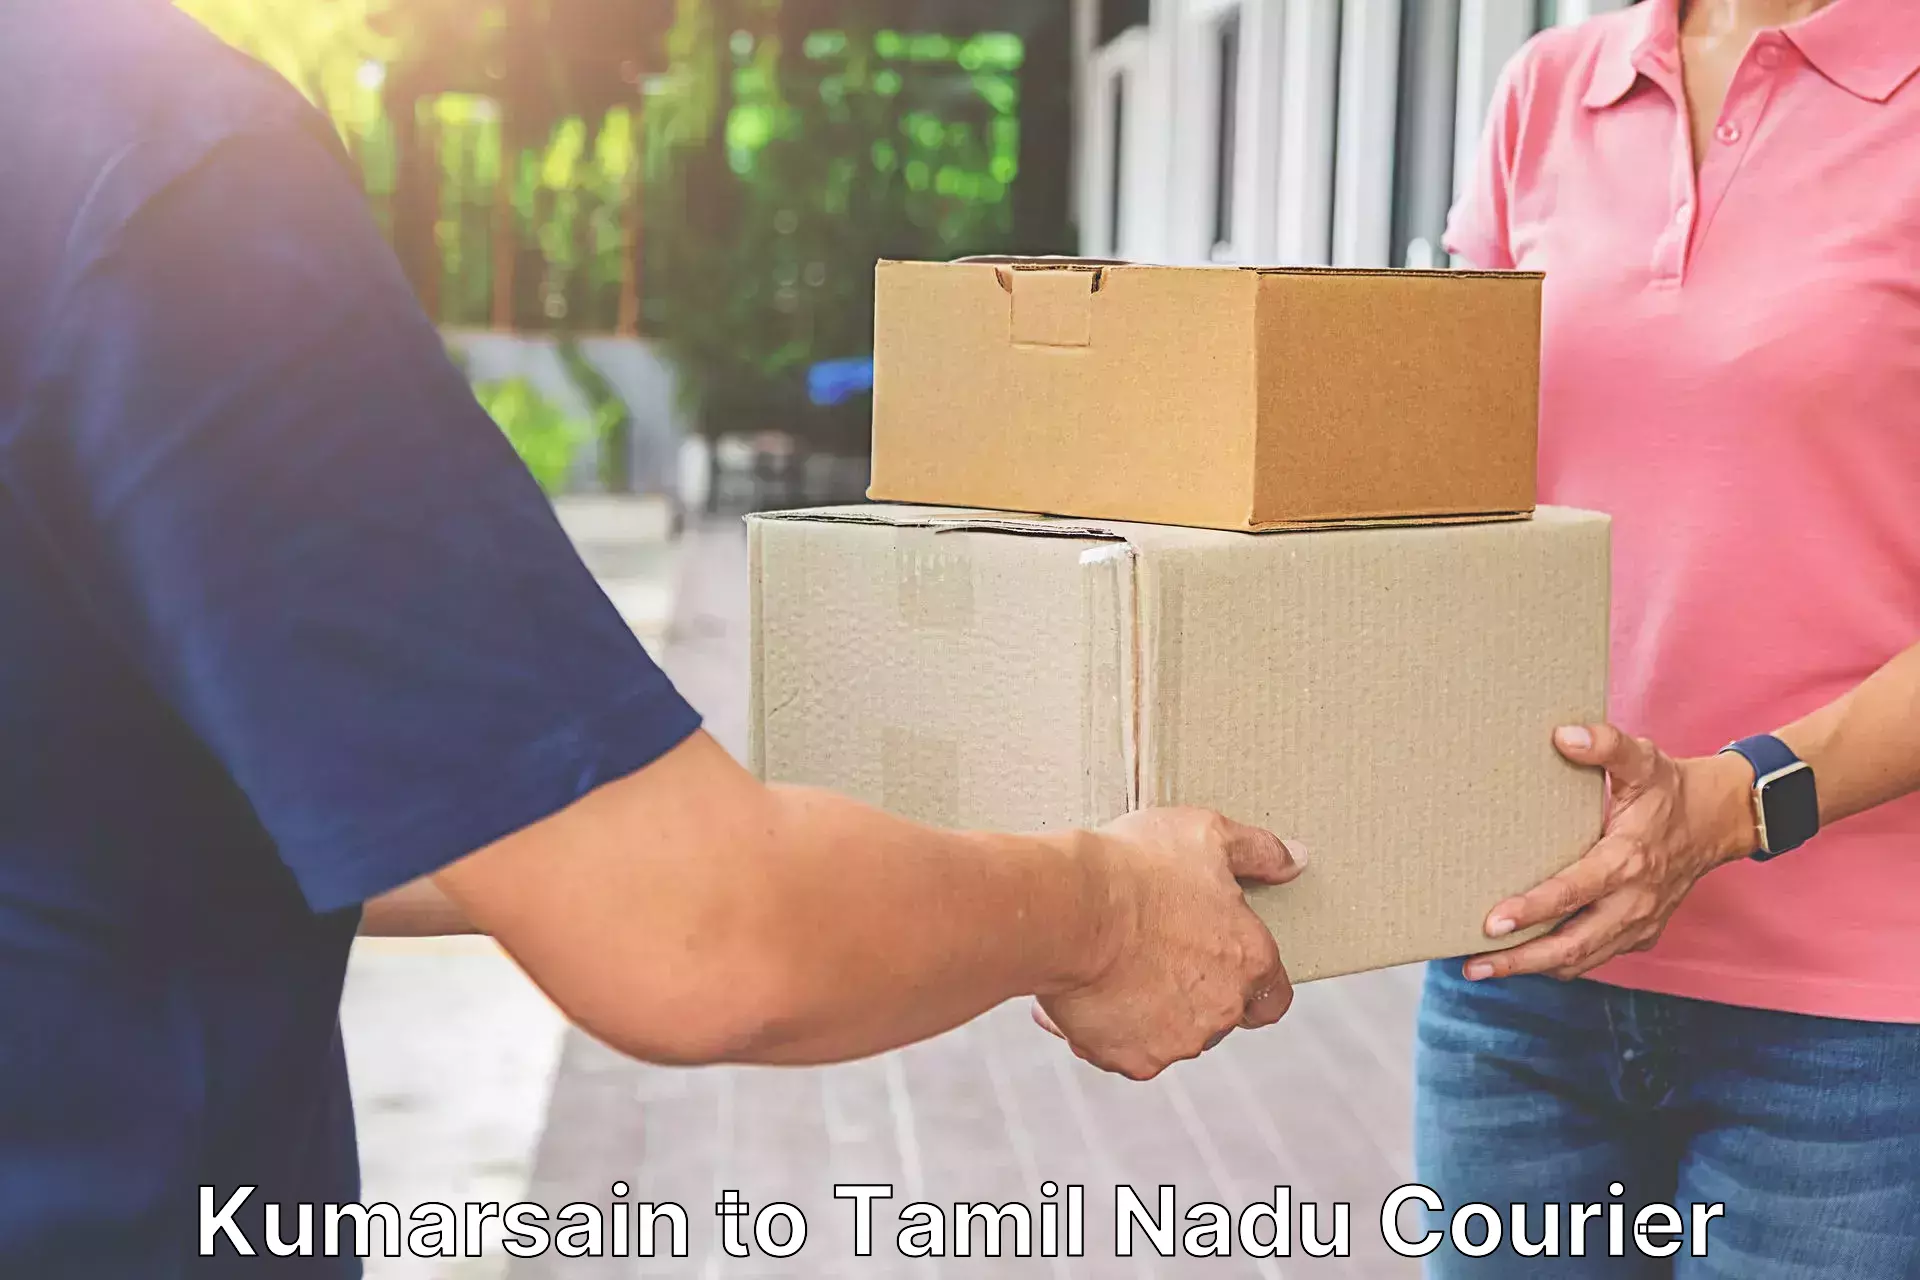 Premium courier services Kumarsain to Tamil Nadu